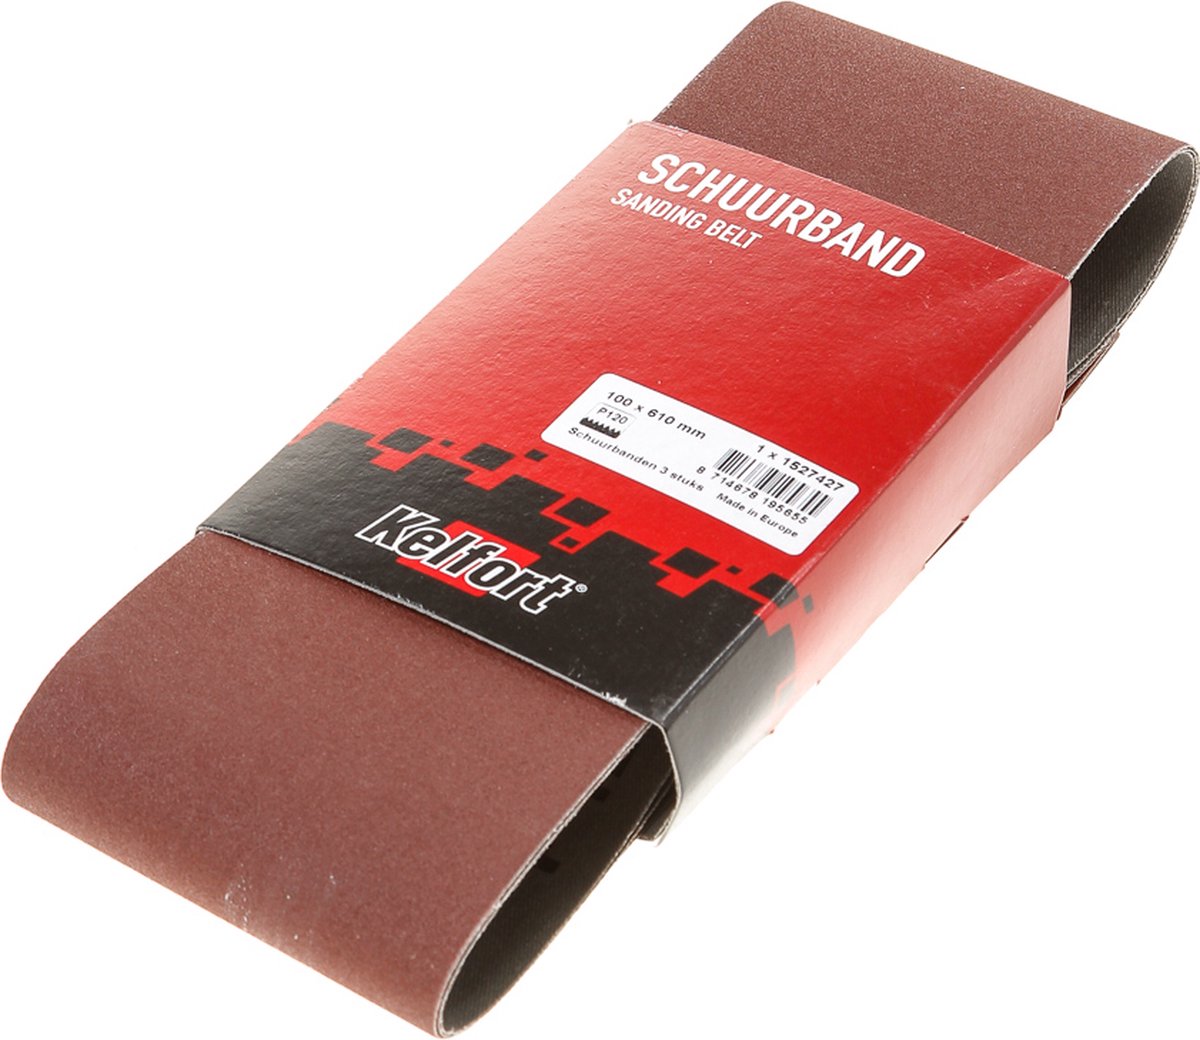 Schuurband 100x610 k120 (3)